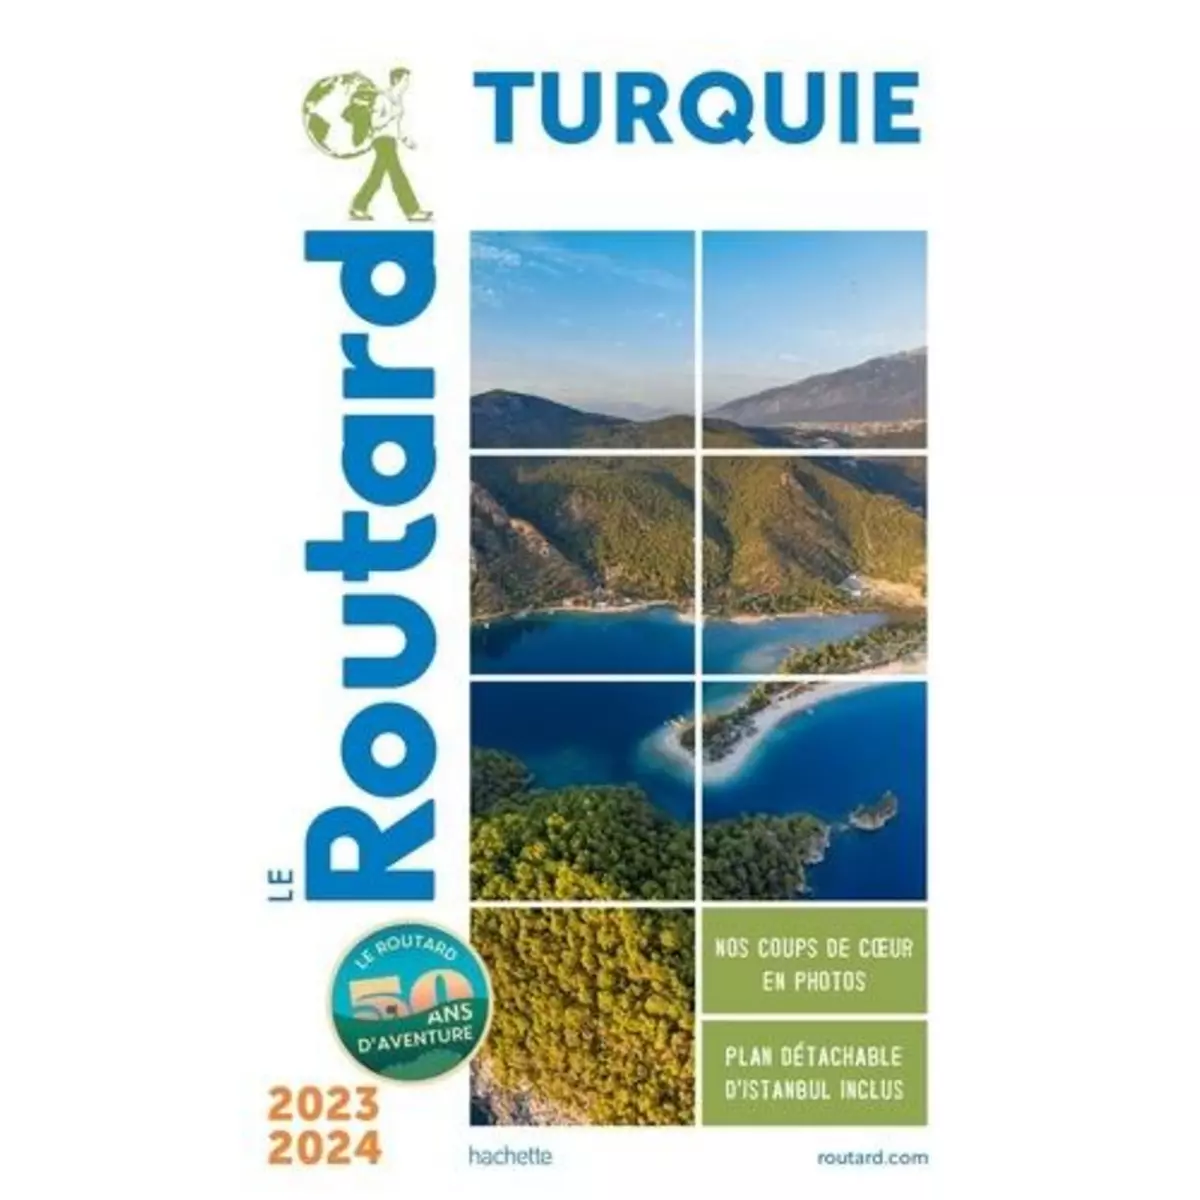  TURQUIE. EDITION 2023-2024. AVEC 1 PLAN DETACHABLE, Le Routard